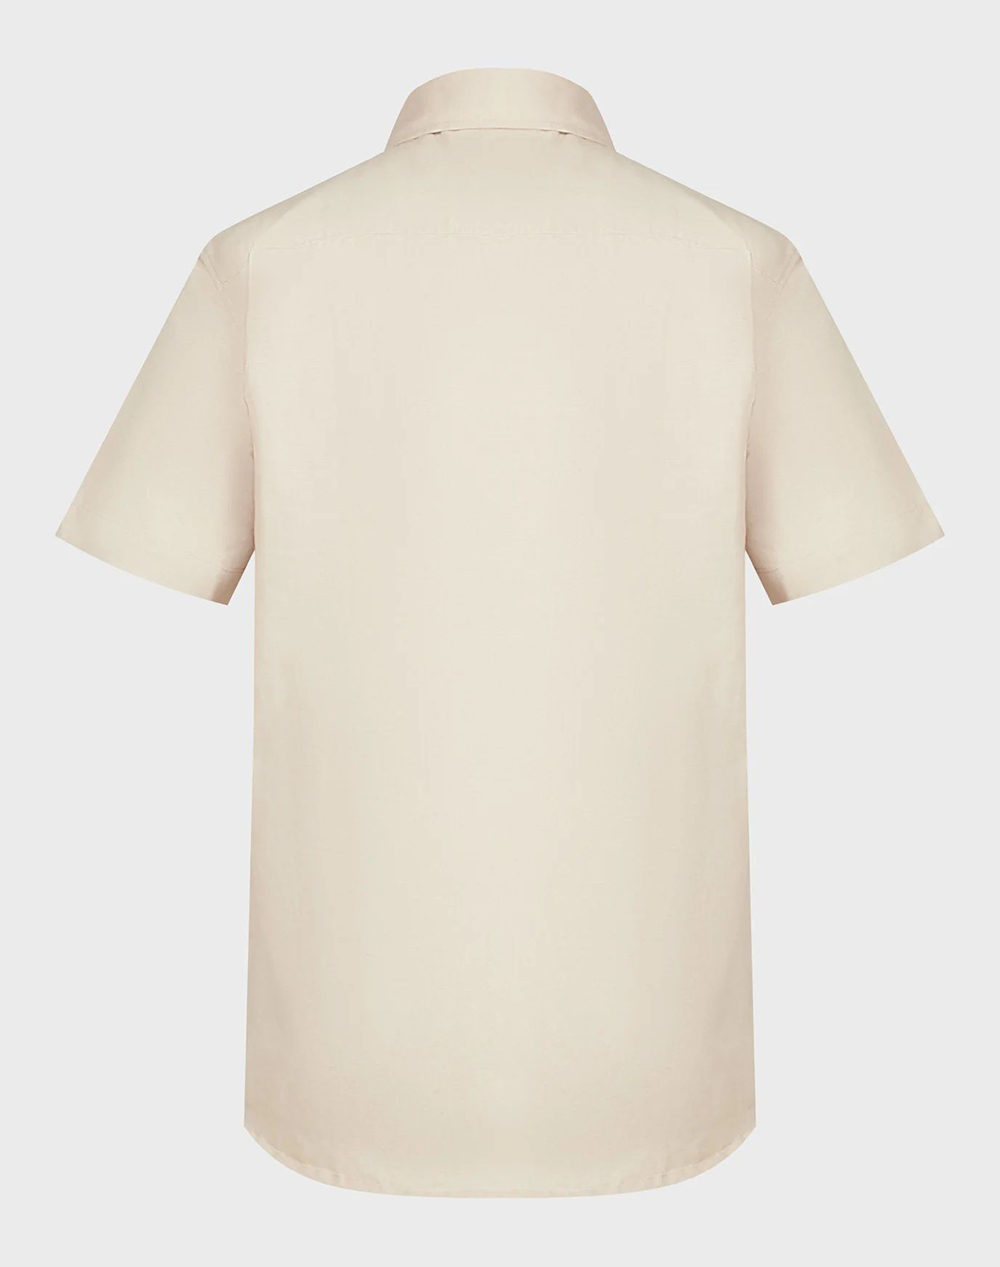 MEXX BRANDON Basic linen short sleeve shirt